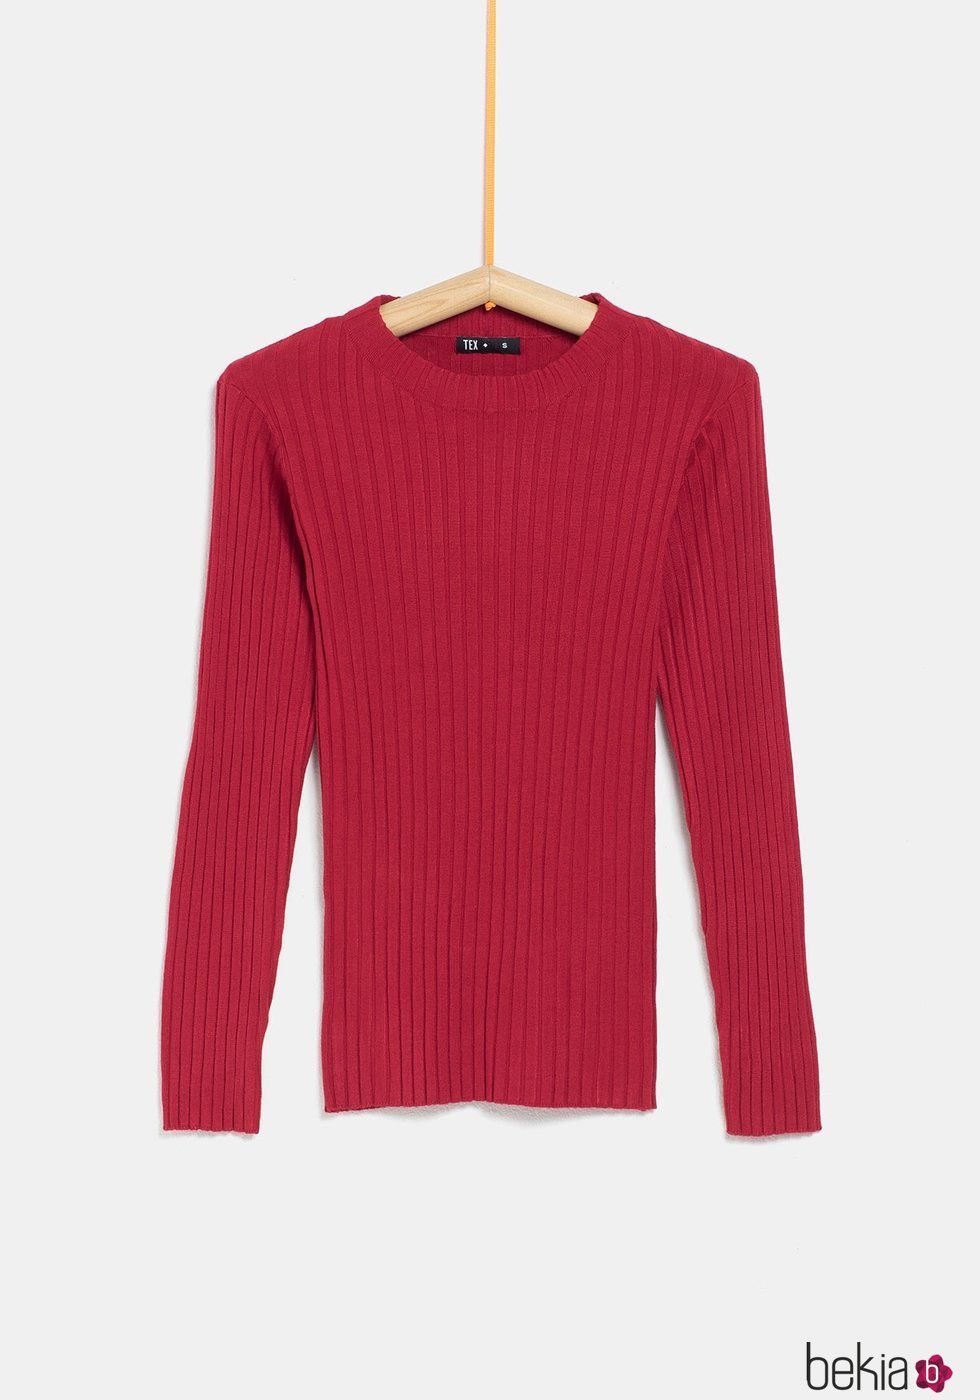 Jersey rojo ceñido de la colección 'I-O' de Carrefour y TEX para otoño/invierno 2019